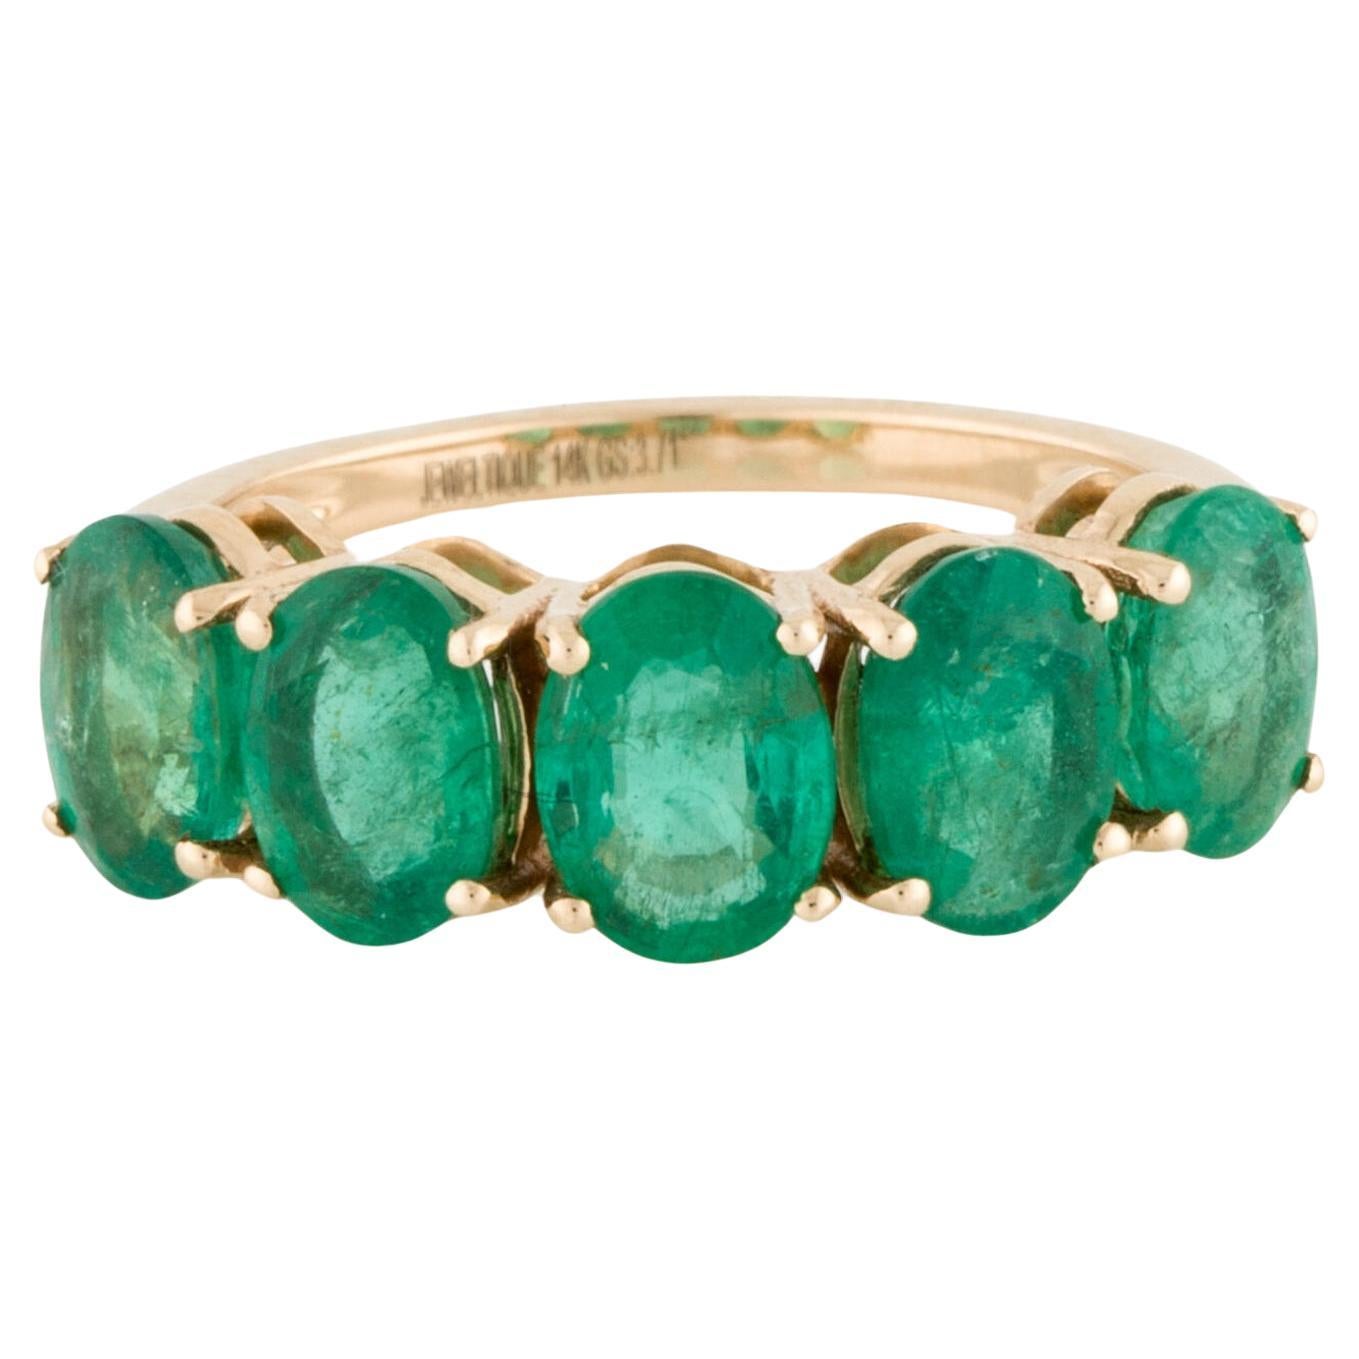 14K Emerald Band - Size 6.75 - Timeless Elegance, Luxury Jewelry Statement Ring (bague de luxe à l'élégance intemporelle)